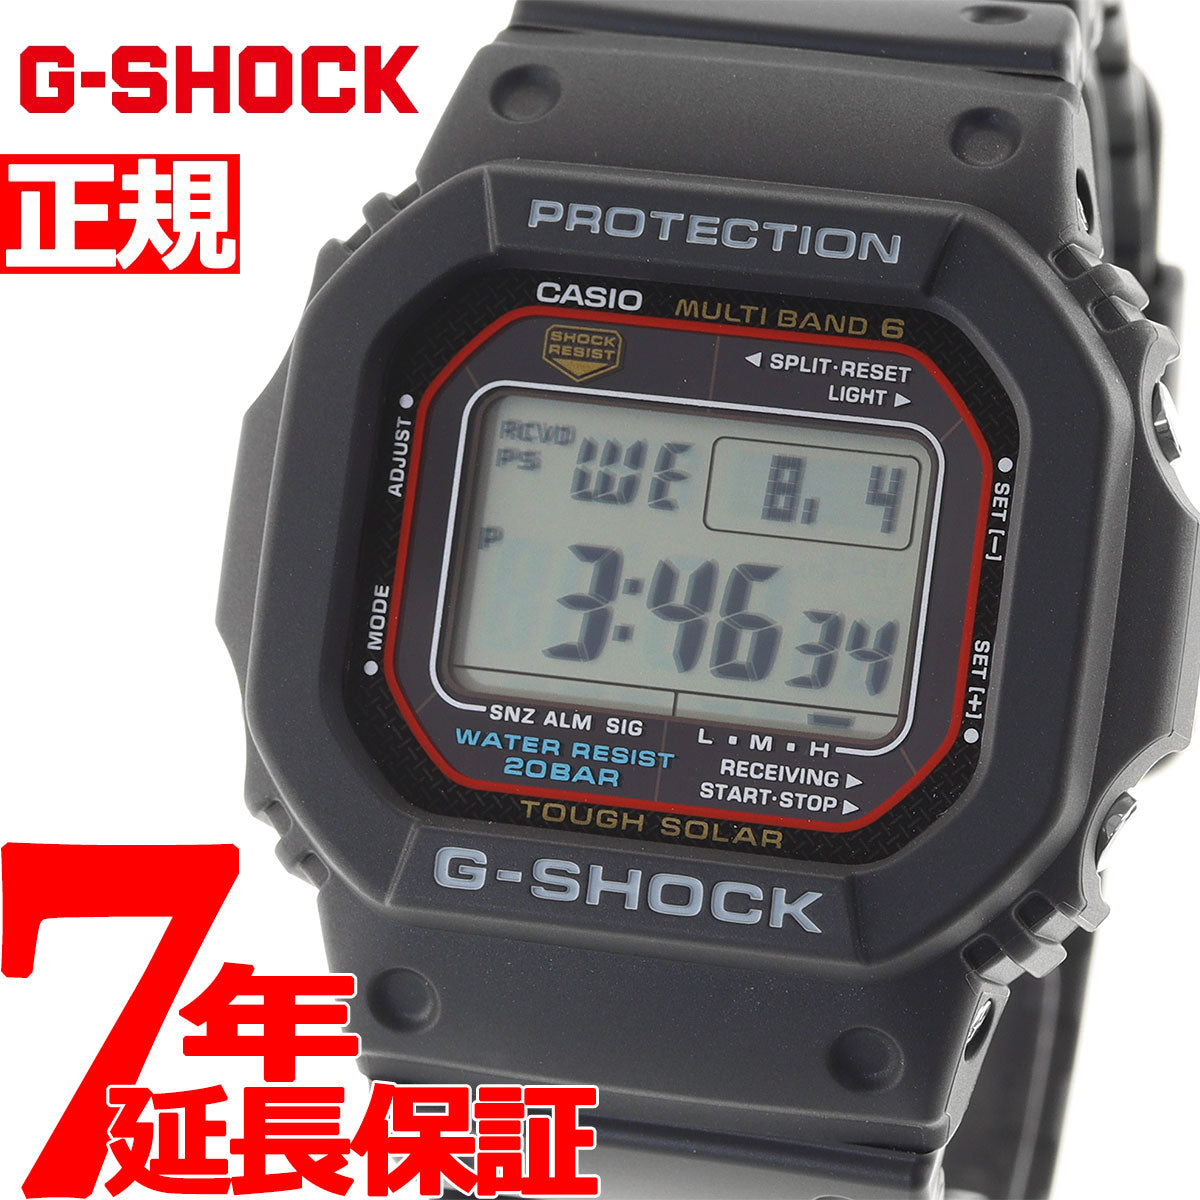 CASIO  g-shock  GW  5600